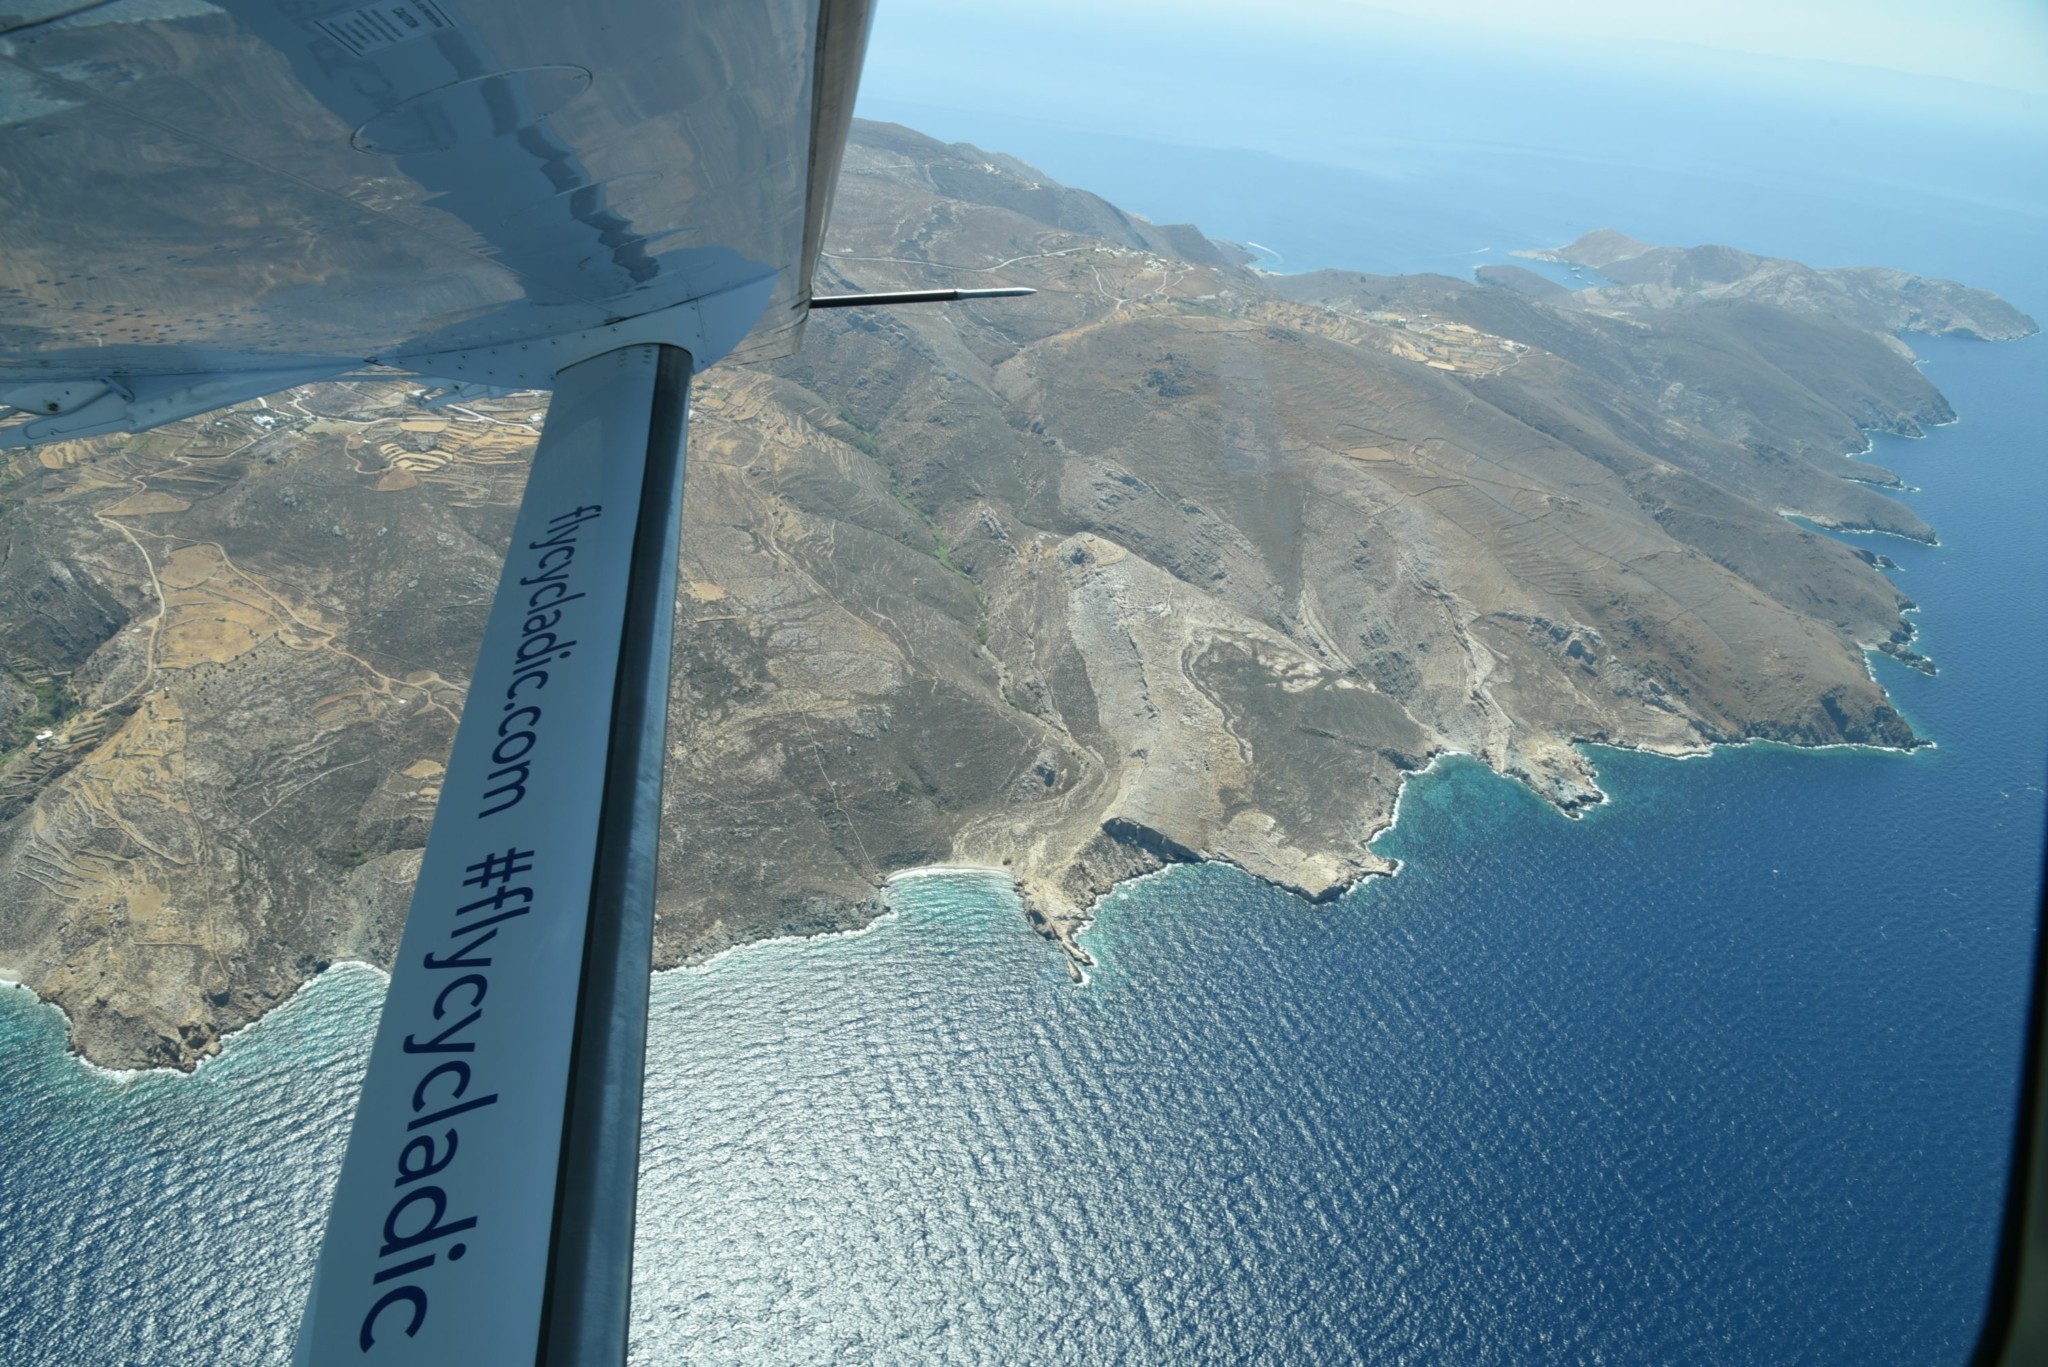 Cycladic: Μετατρέπει τα αεροσκάφη της σε ηλεκτρικά και προσθέτει νέα δρομολόγια (pics)